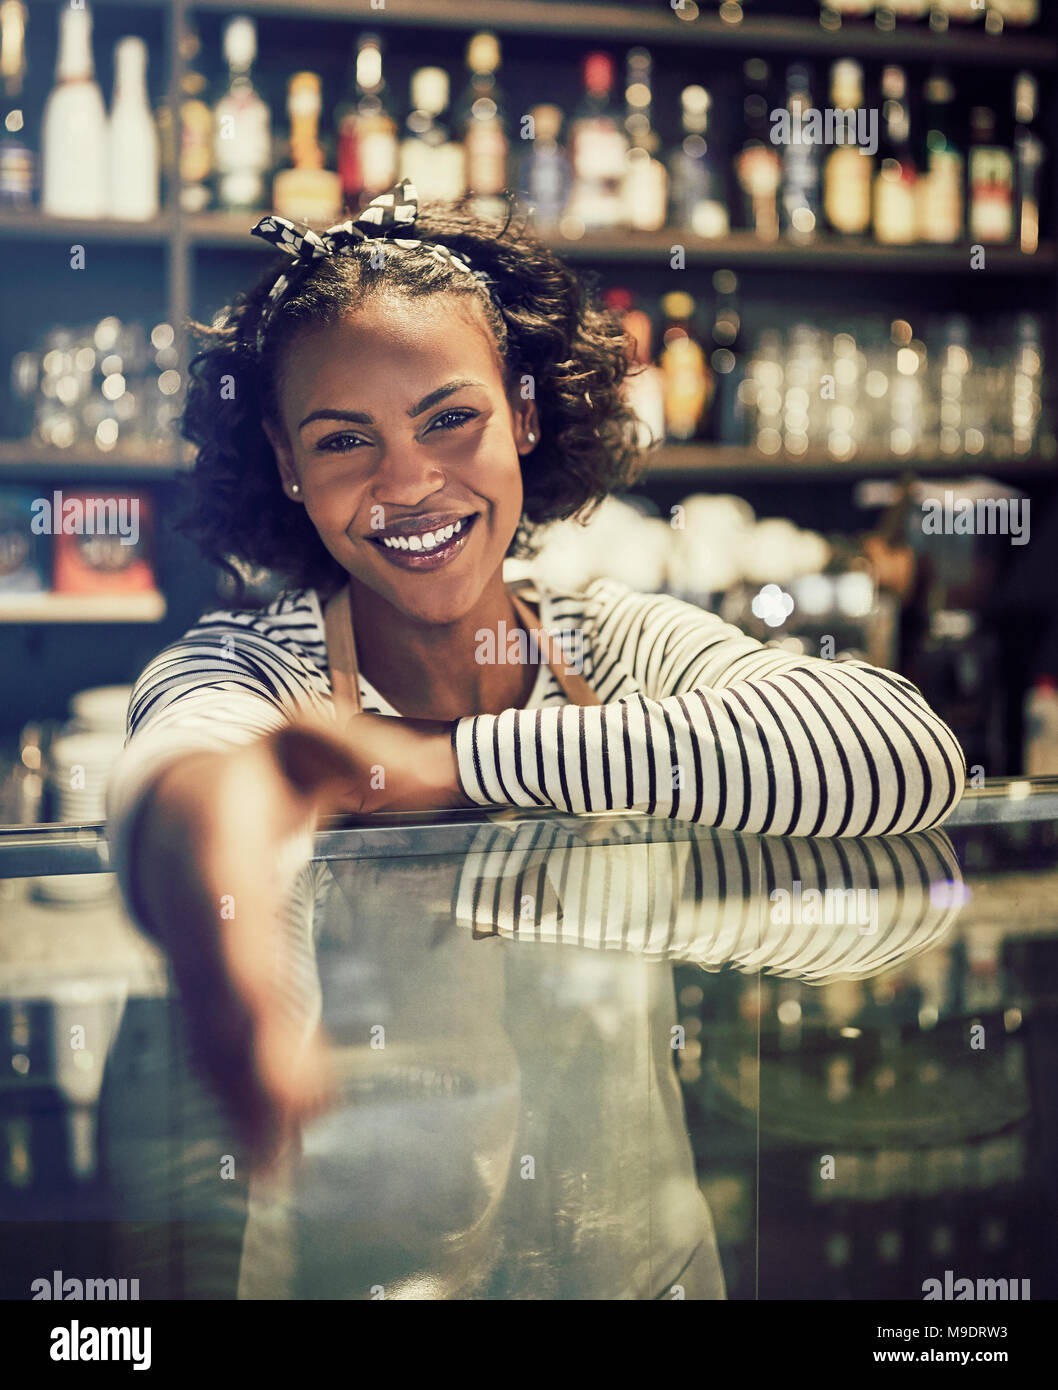 Les jeunes entrepreneurs africains smiling et l'extension d'une poignée de main en se tenant debout derrière le comptoir de son café à la mode Banque D'Images